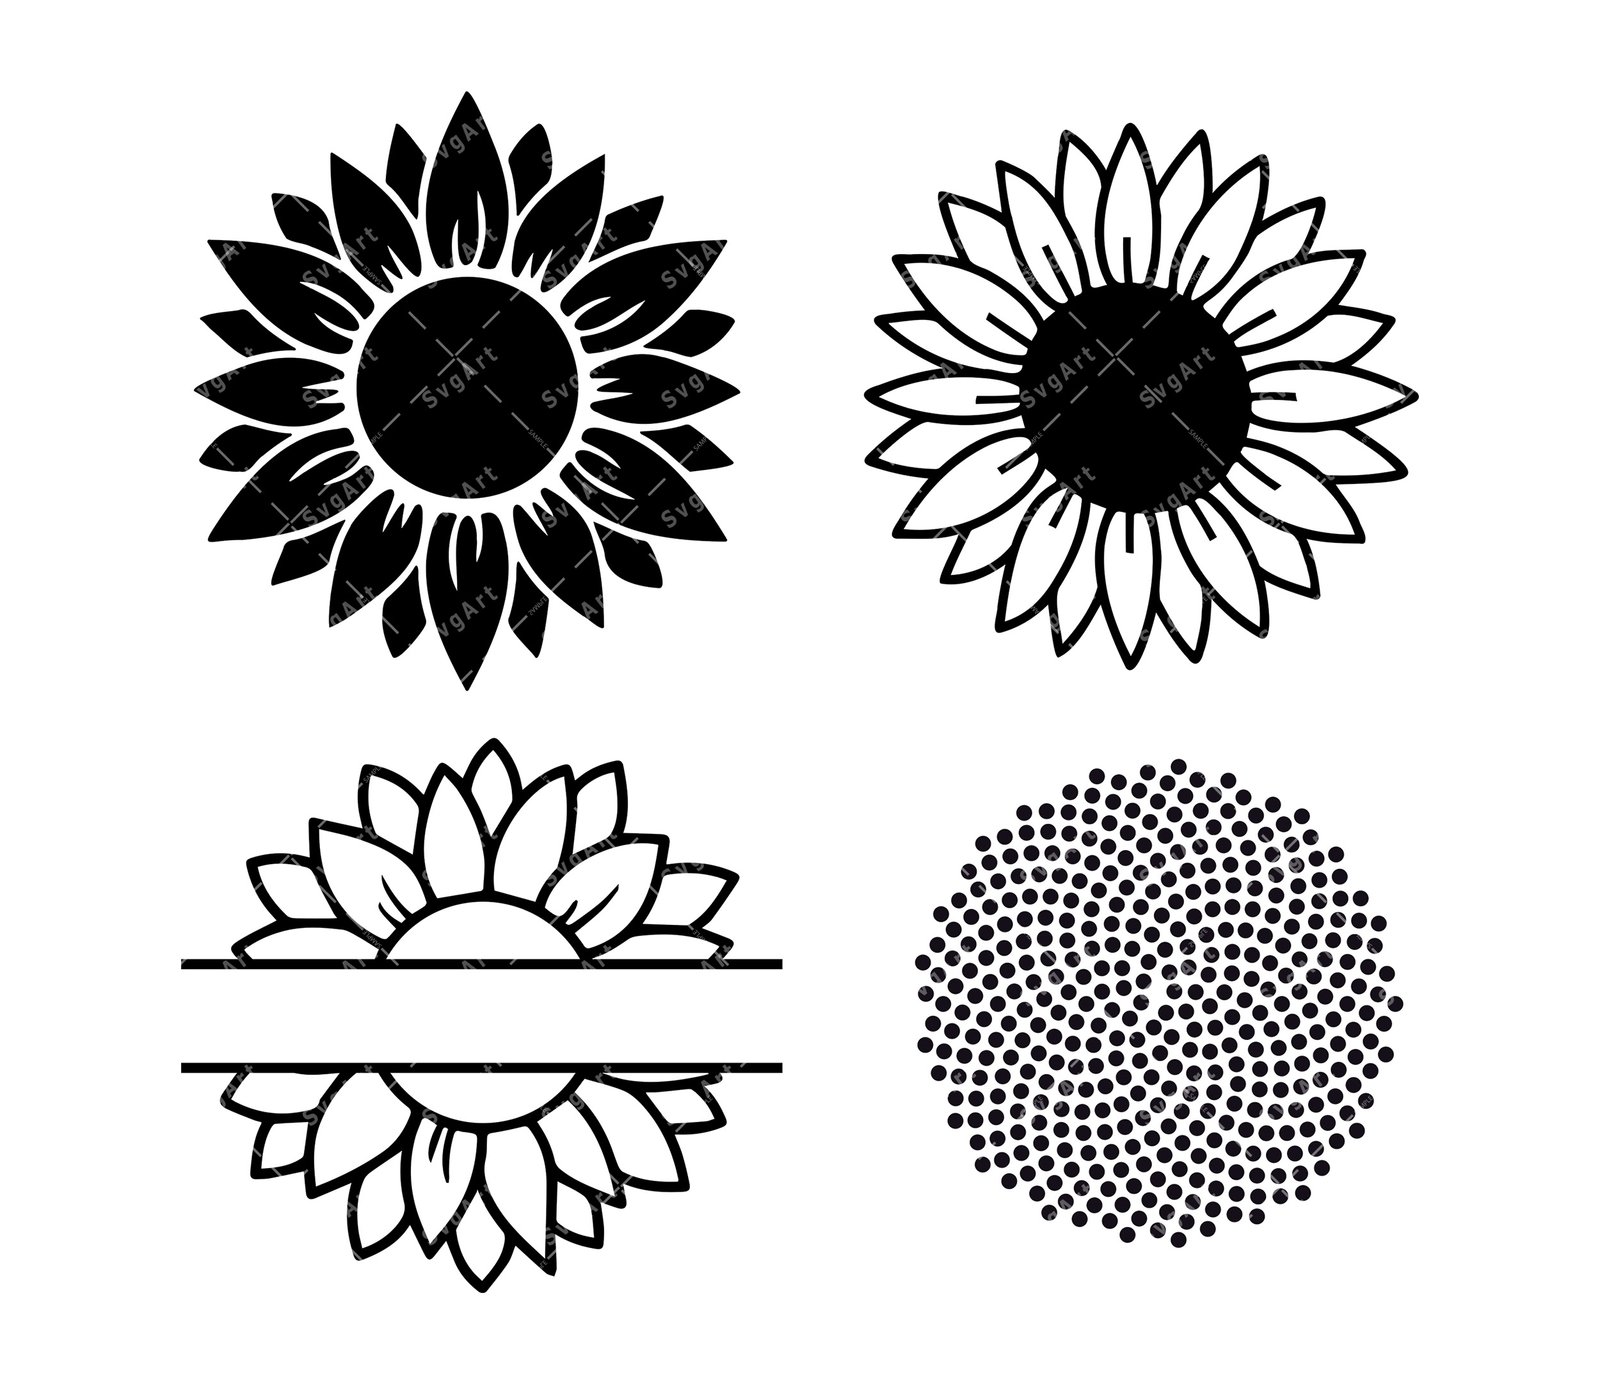 Flower SVG file - Craft House SVG